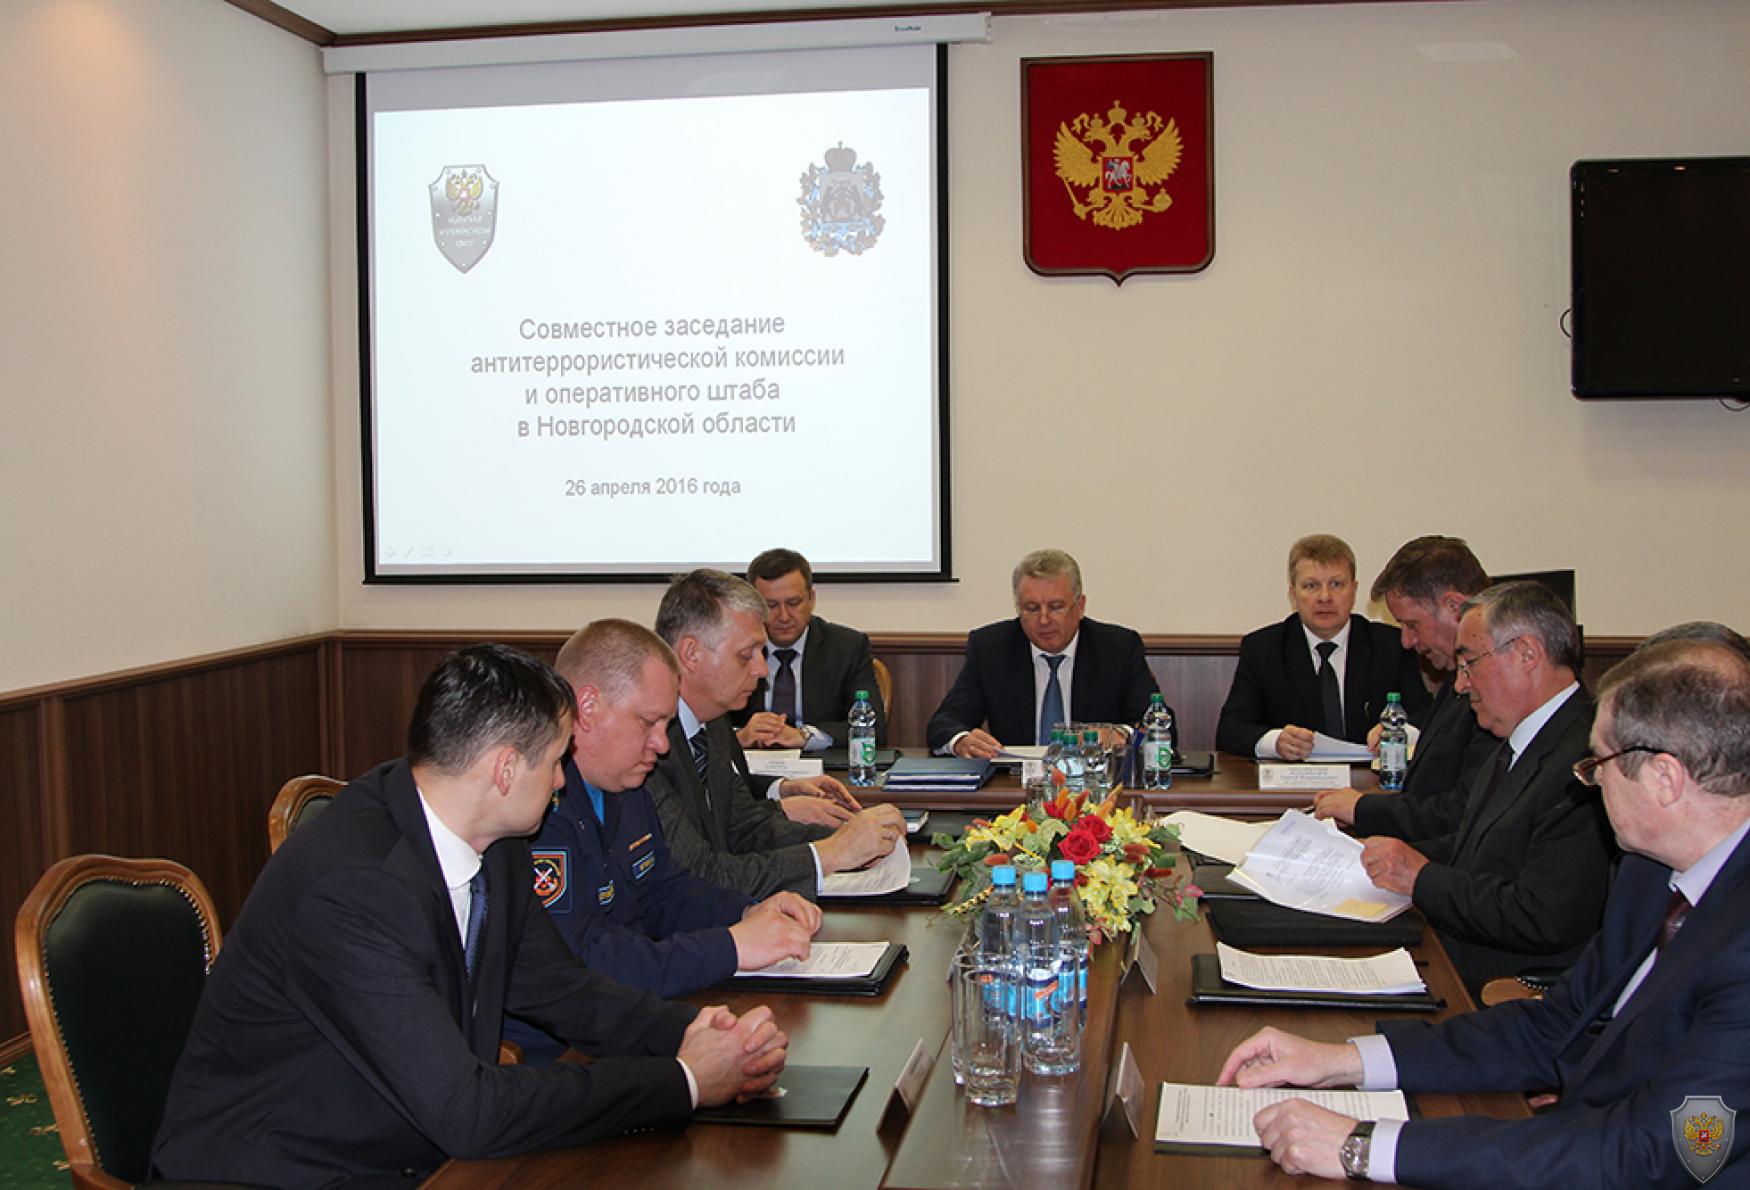 Совместное заседание антитеррористической комиссии и оперативного штаба в Новгородской области